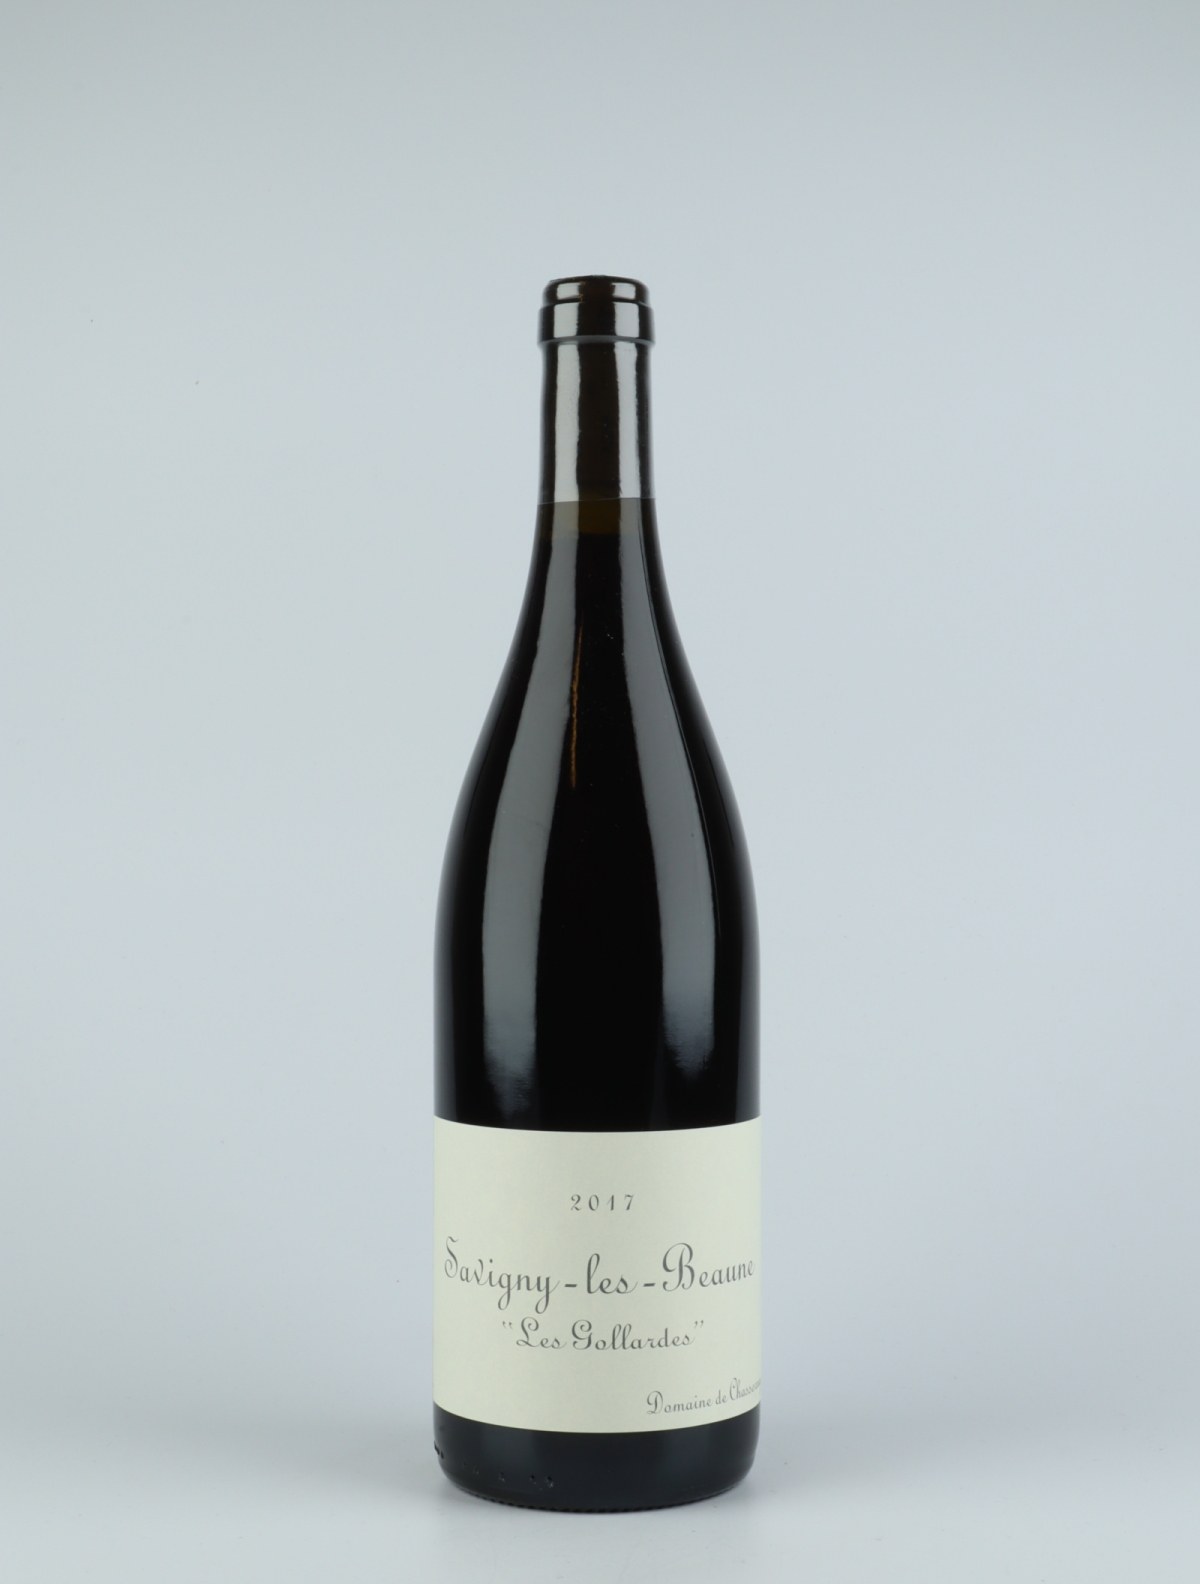 En flaske 2017 Savigny les Beaune - Les Gollardes Rødvin fra Domaine de Chassorney, Bourgogne i Frankrig